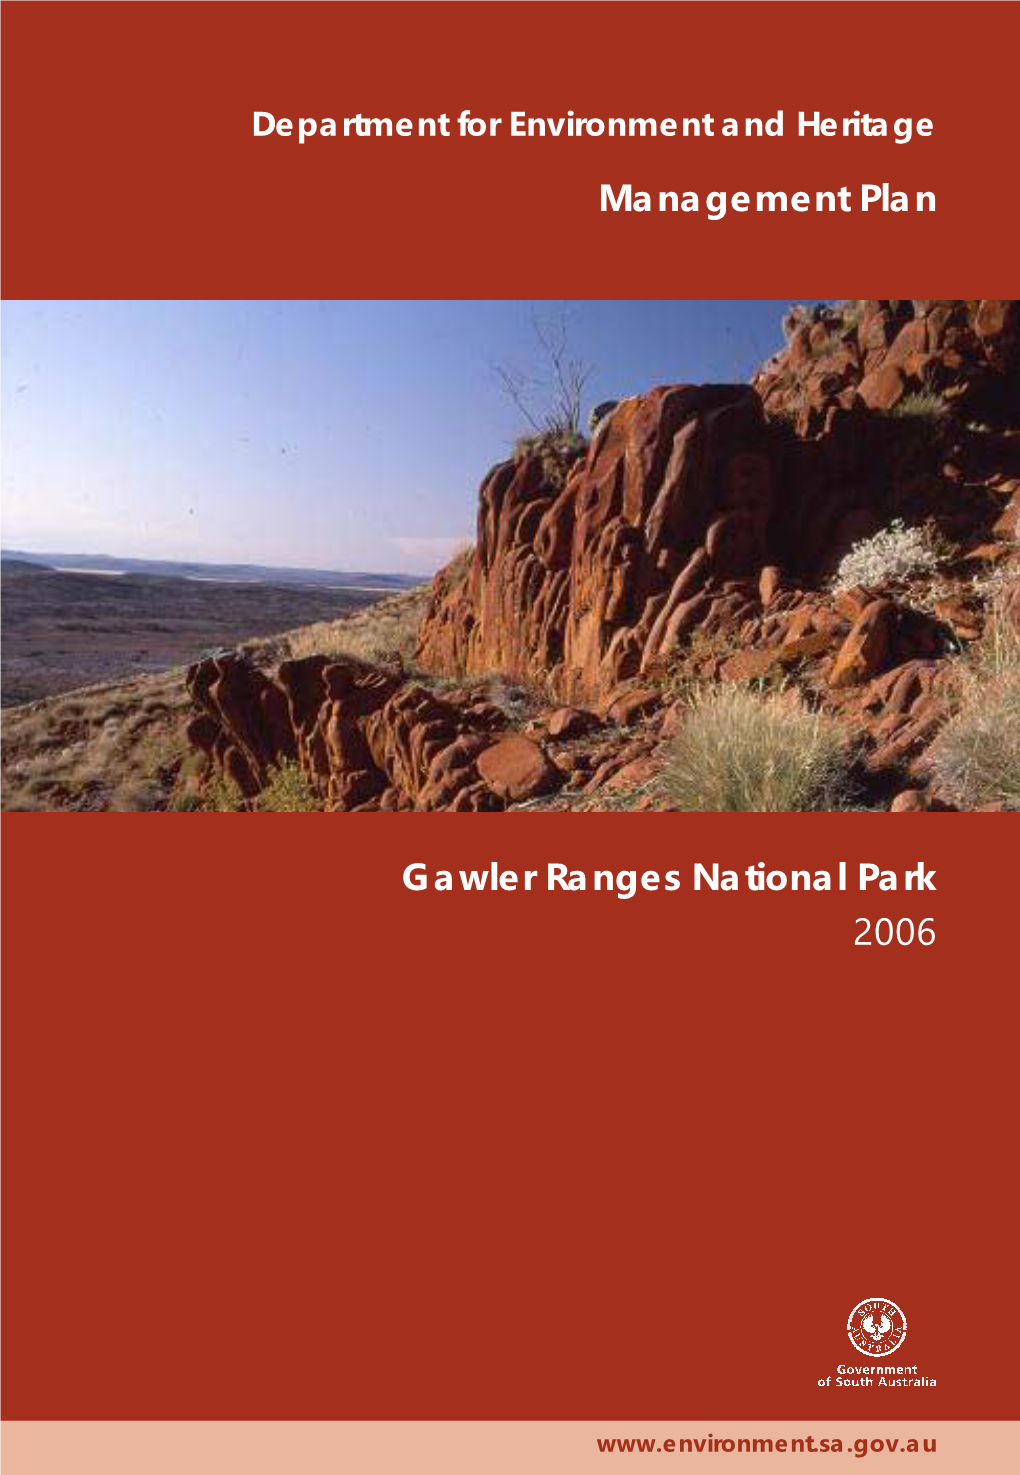 Gawler Ranges National Park Management Plan